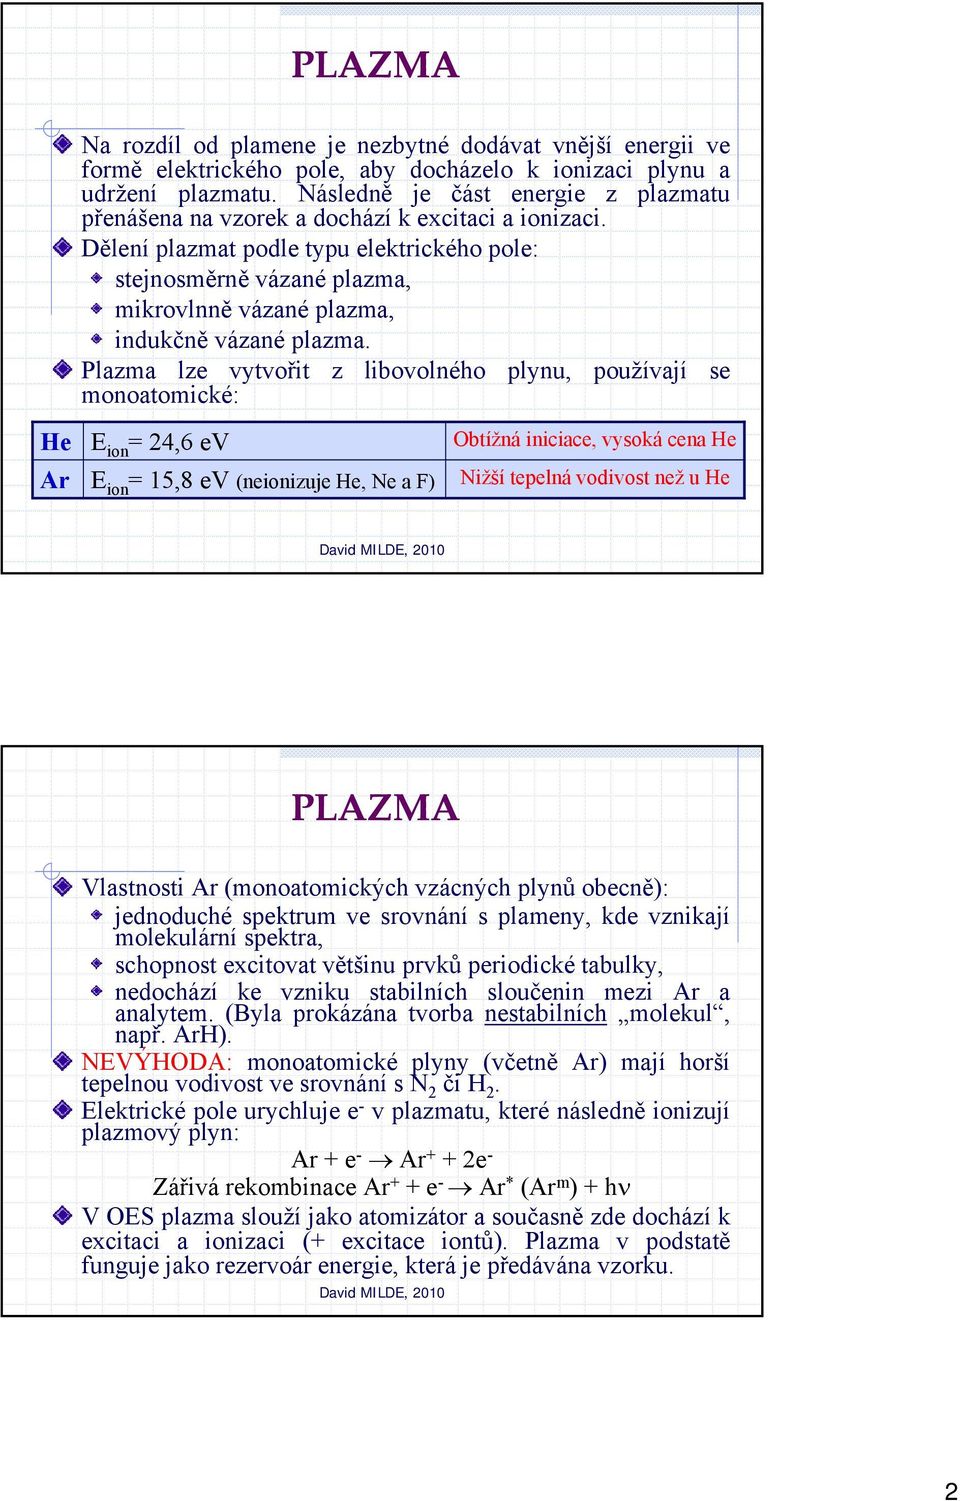 Dělení plazmat podle typu elektrického pole: stejnosměrně vázané plazma, mikrovlnně vázané plazma, indukčně vázané plazma.